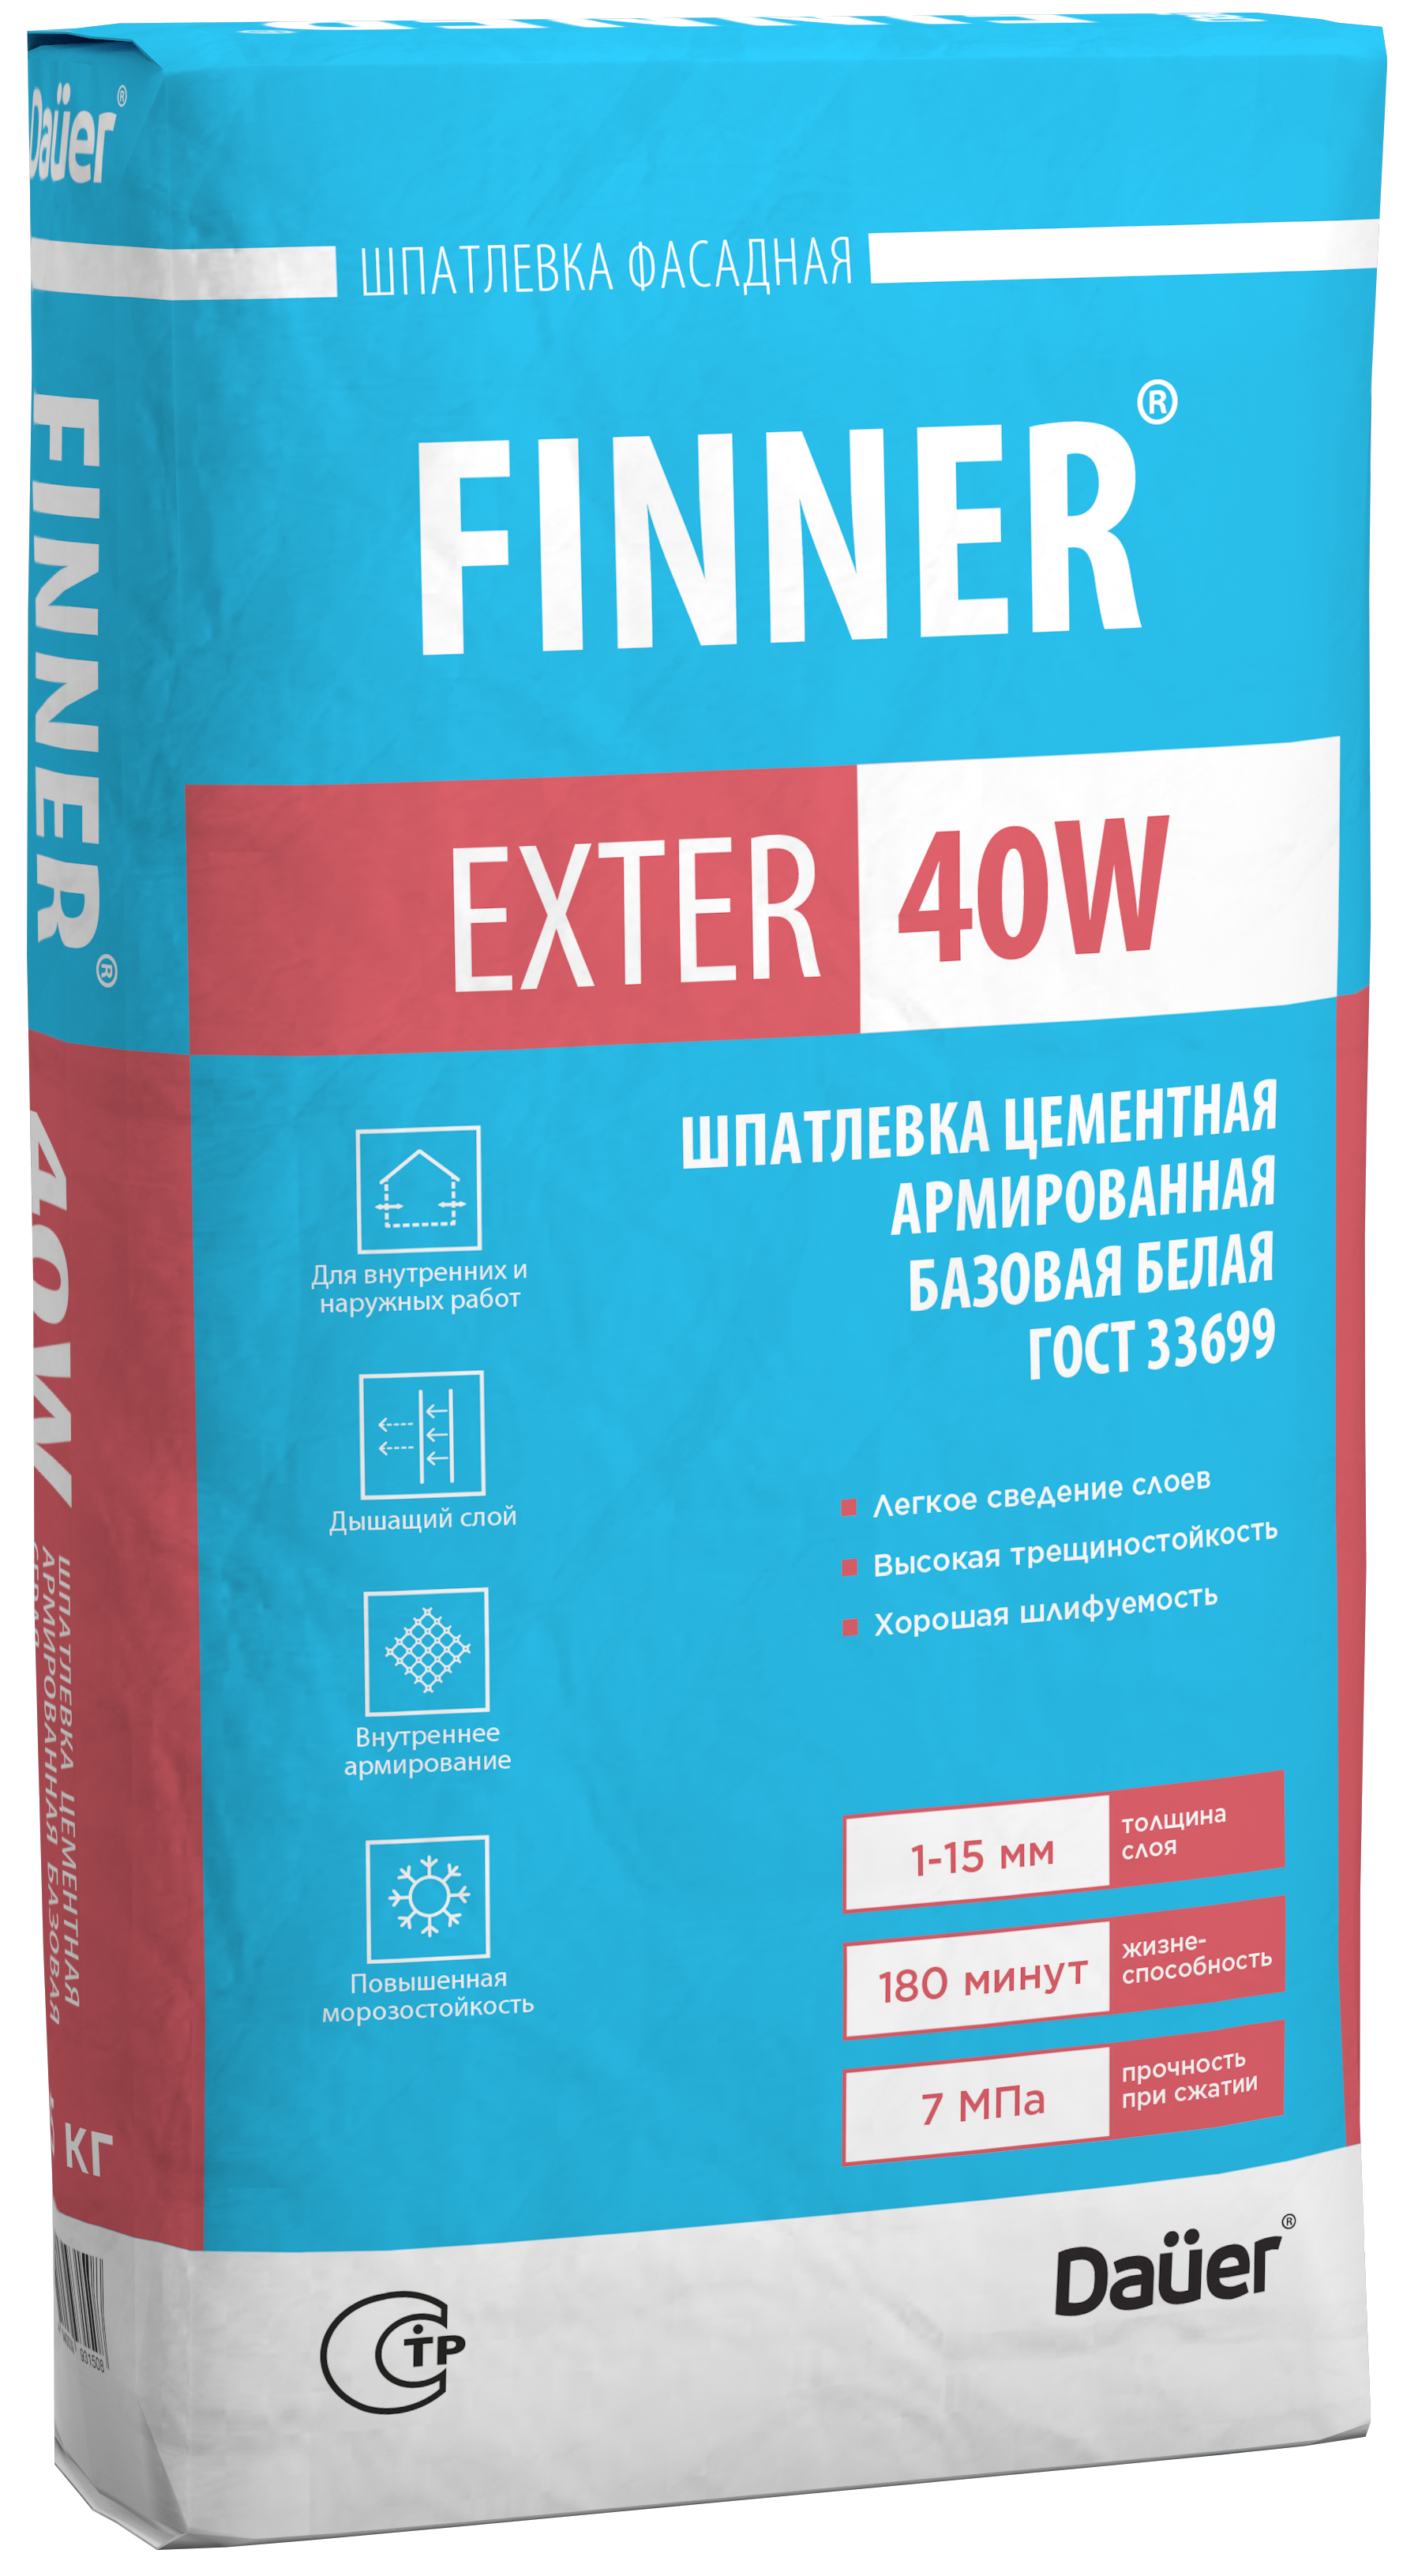 FINNER® EXTER 40W Шпатлевка цементная армированная базовая белая 180/7,0/F50 ГОСТ 33699